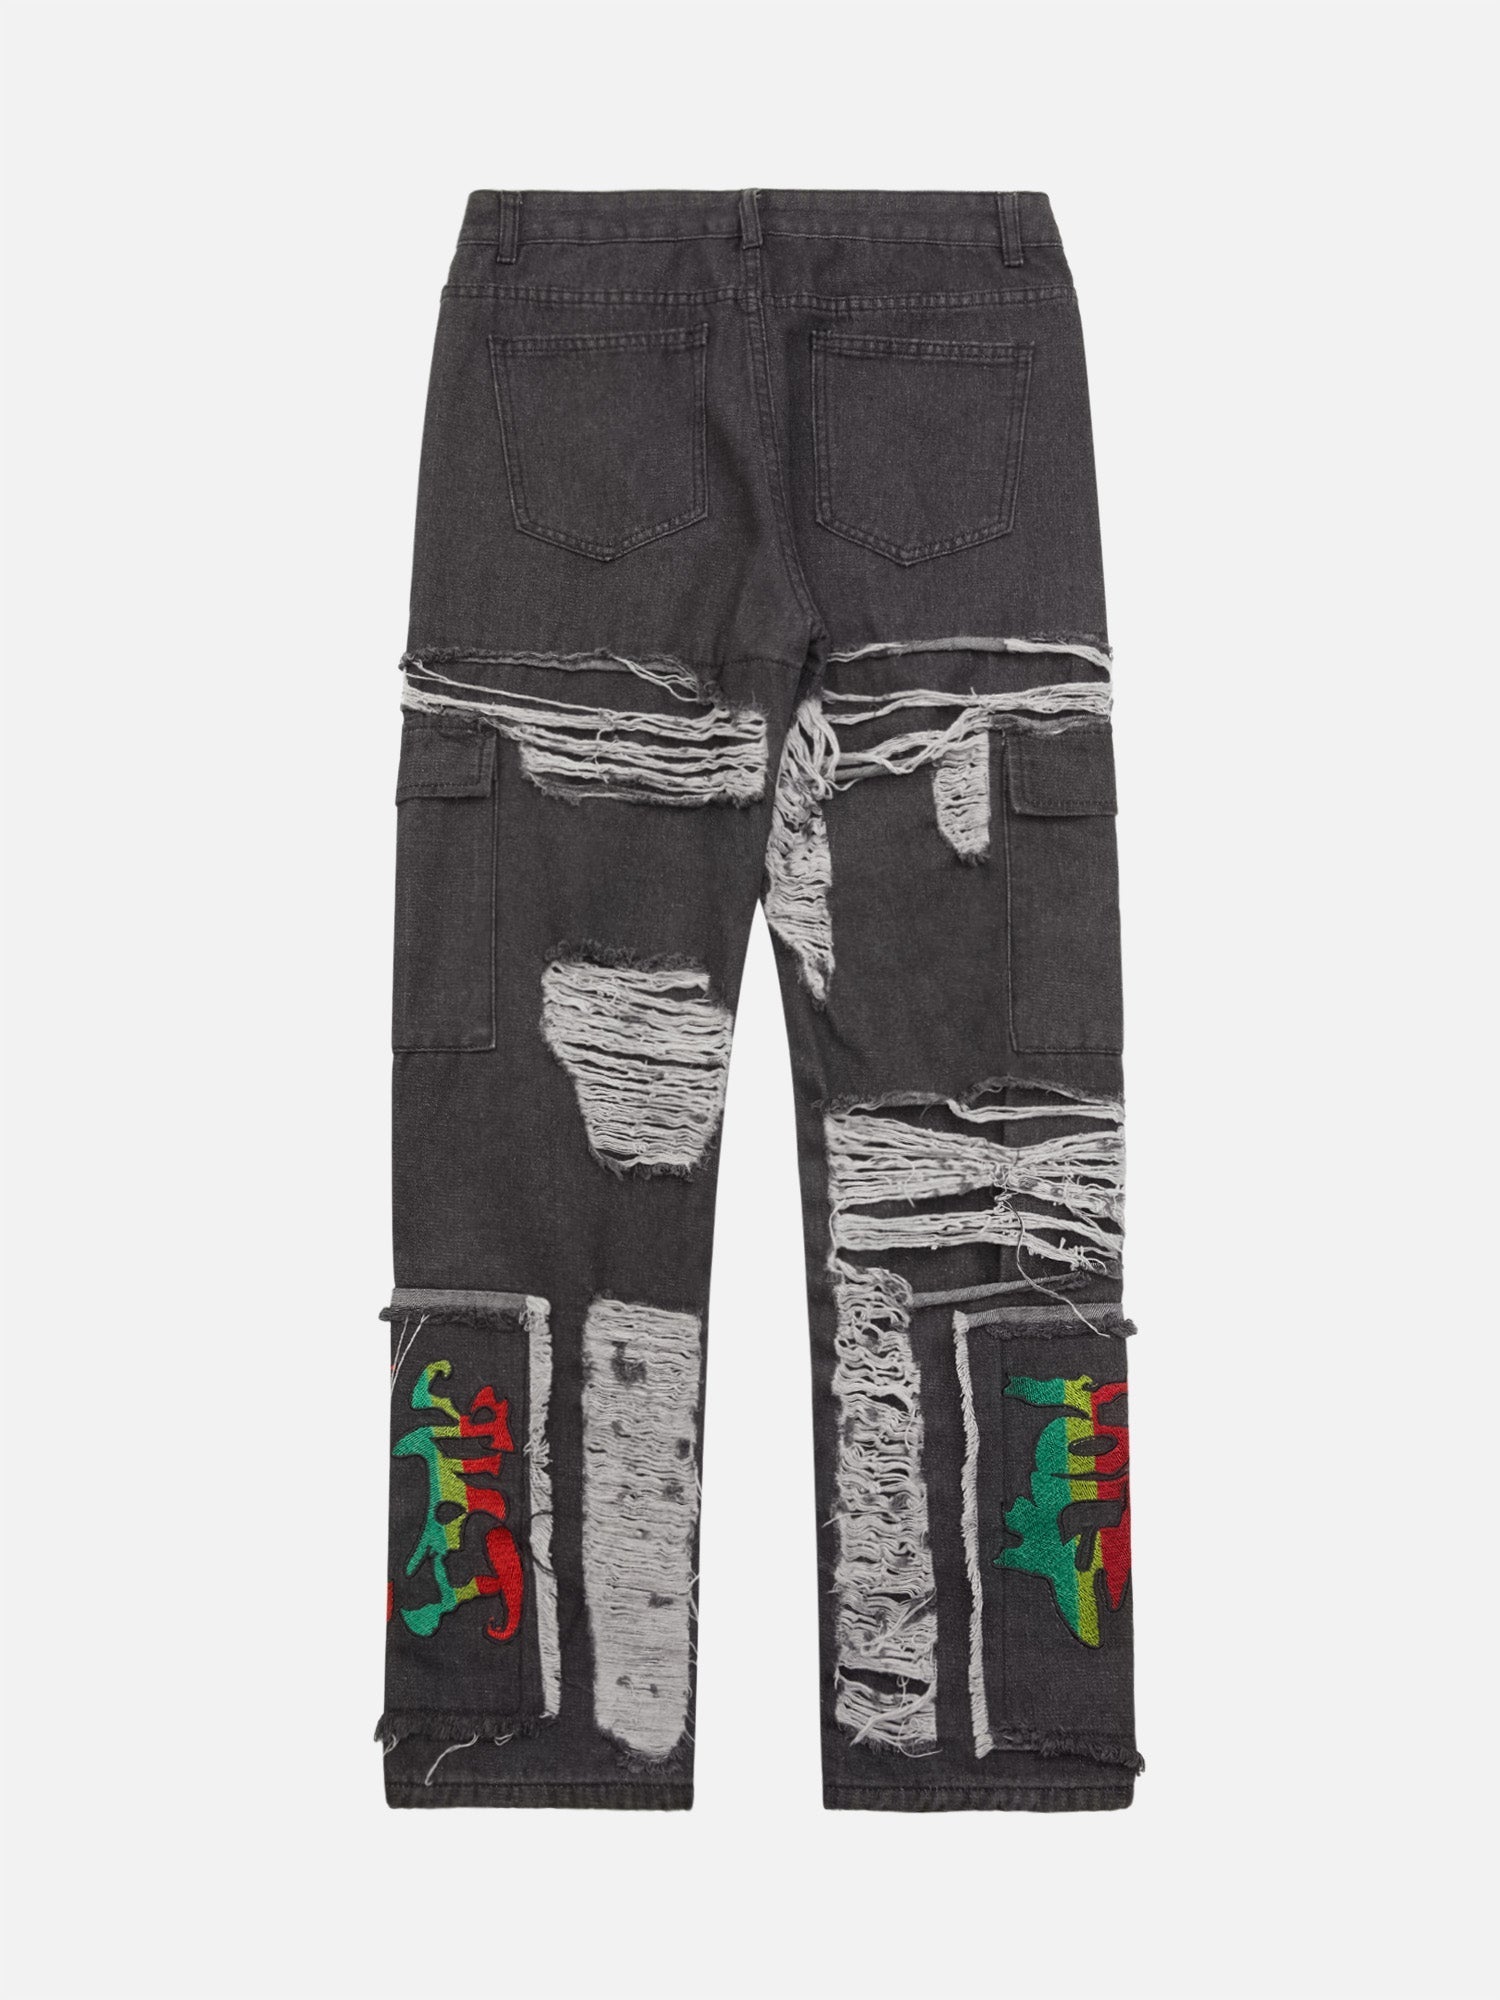 Thesupermade Destruction Brushed Hip Hop Embroidered Jeans